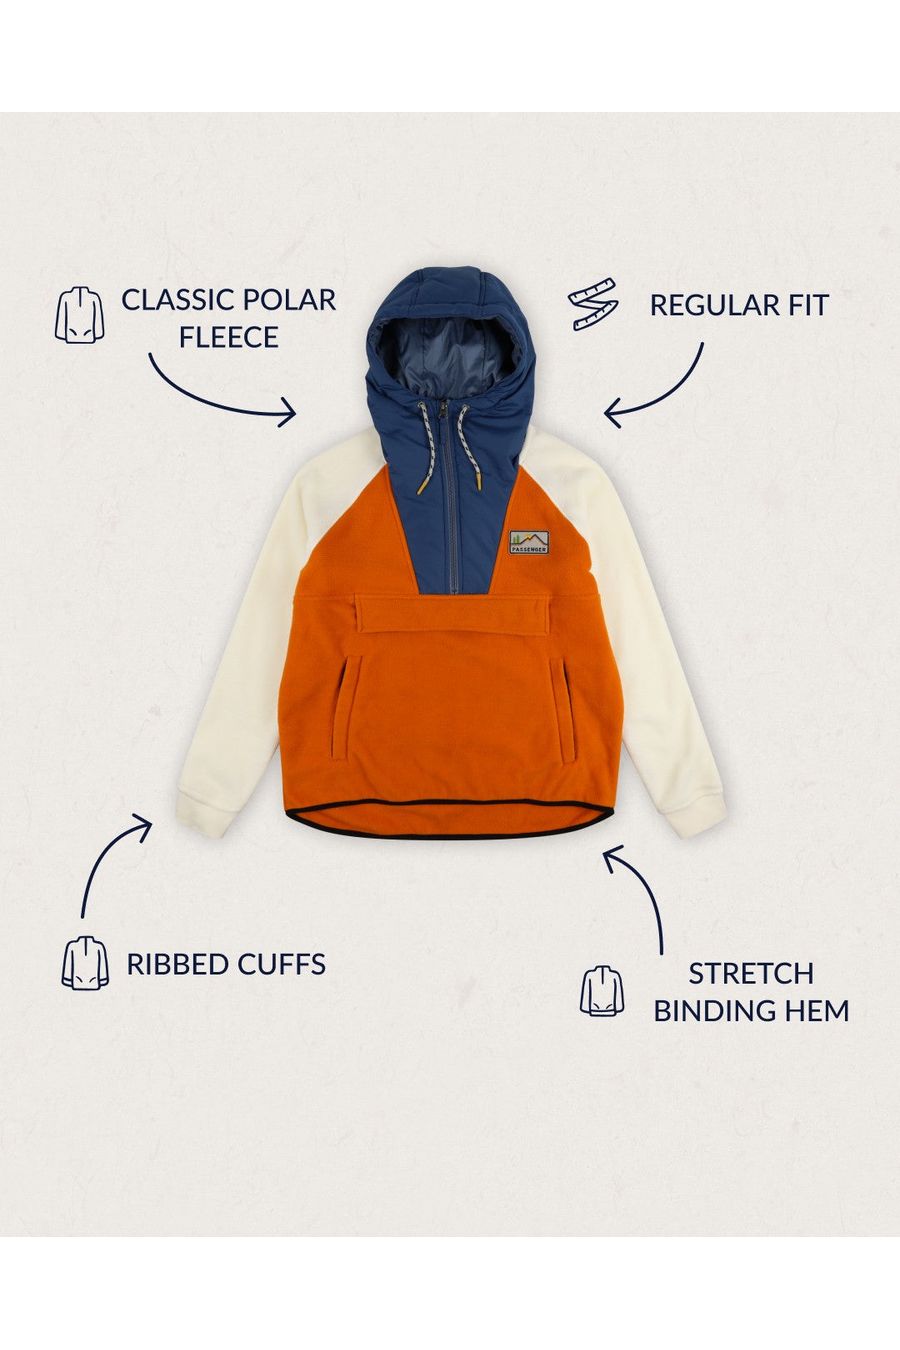 Passenger Alexander Hooded 1/2 Zip Recycled Polar Fleece Sunrise Orange